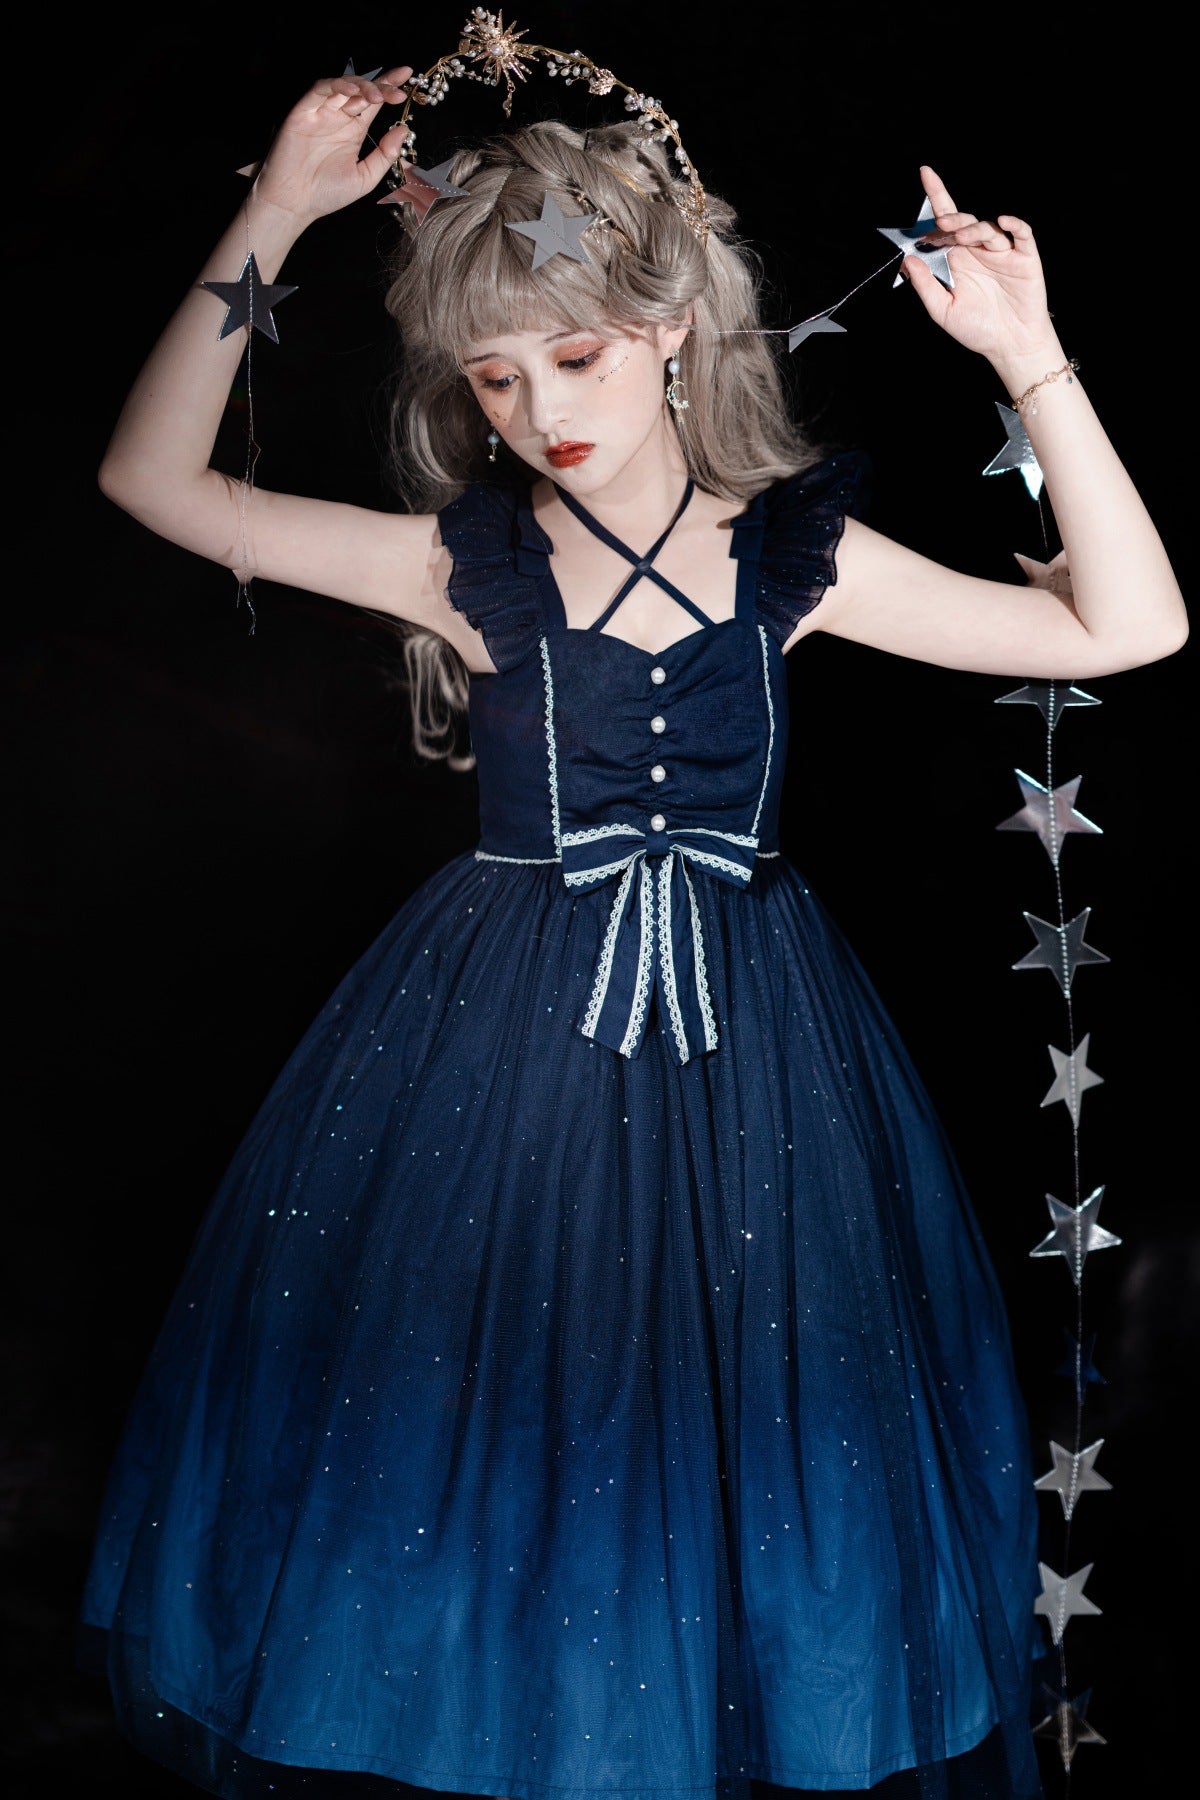 Sea of Galaxy Lolita Dress MK17686